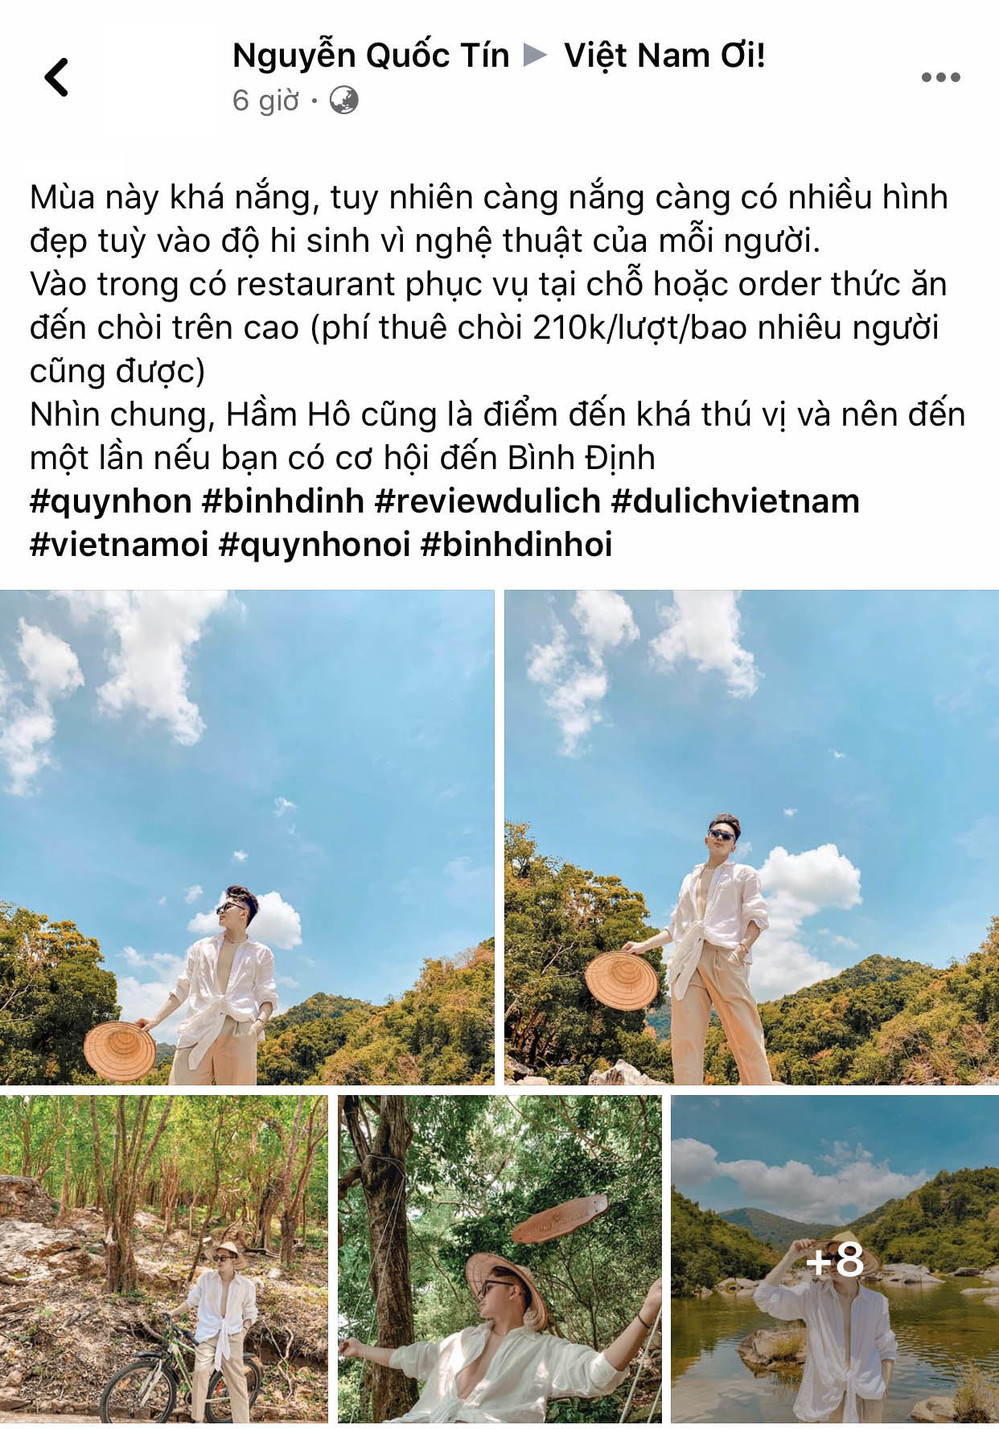  
Cậu bạn Nguyễn Quốc Tín chia sẻ điểm đến mới trong group Việt Nam Ơi.